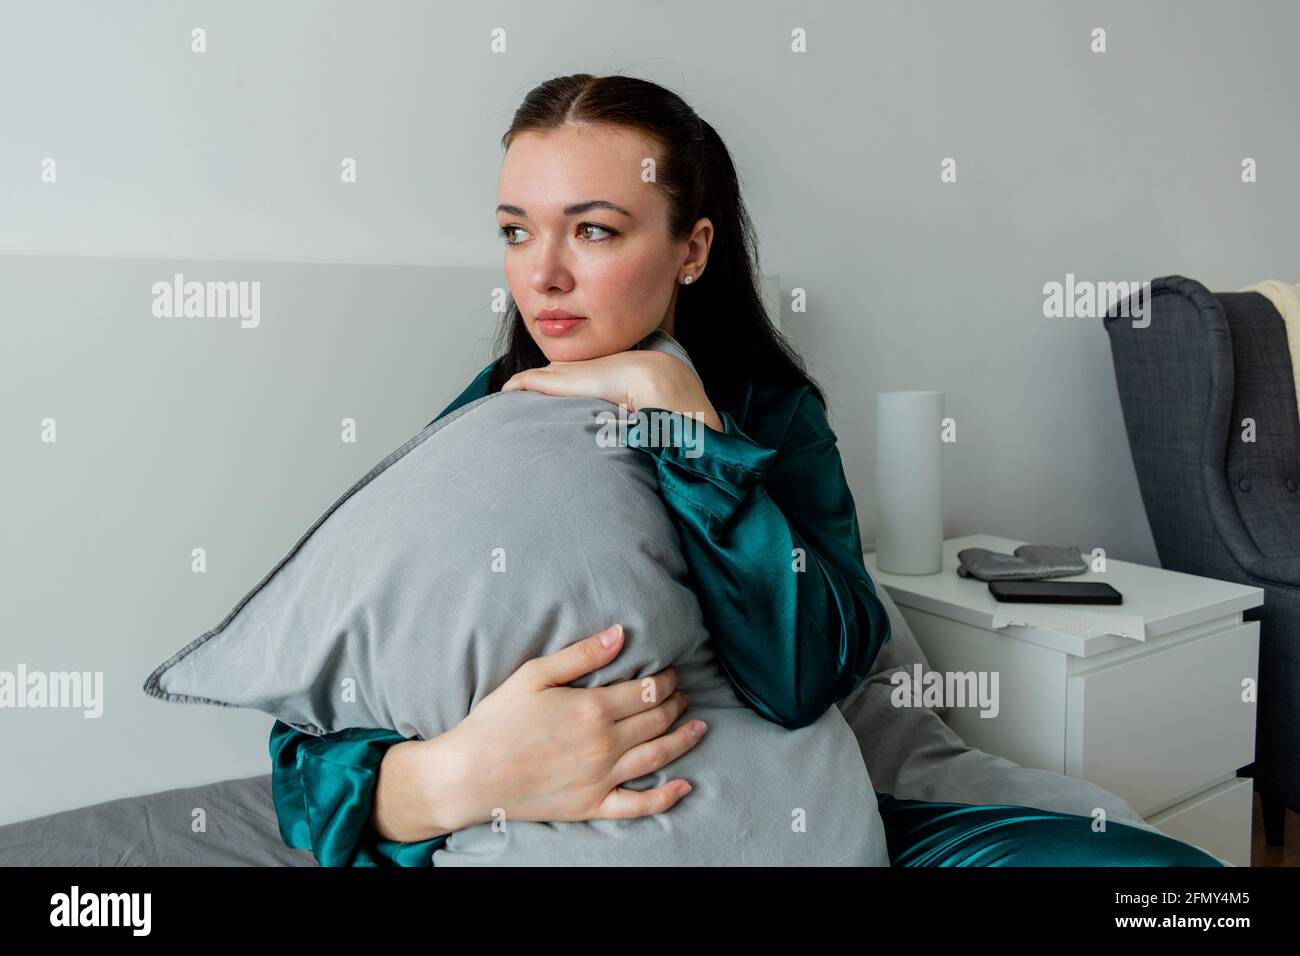 Una mujer joven en pijama de seda se sienta en la cama y abraza una almohada. Soledad dentro de la casa. Concepto de bienestar. Foto de stock